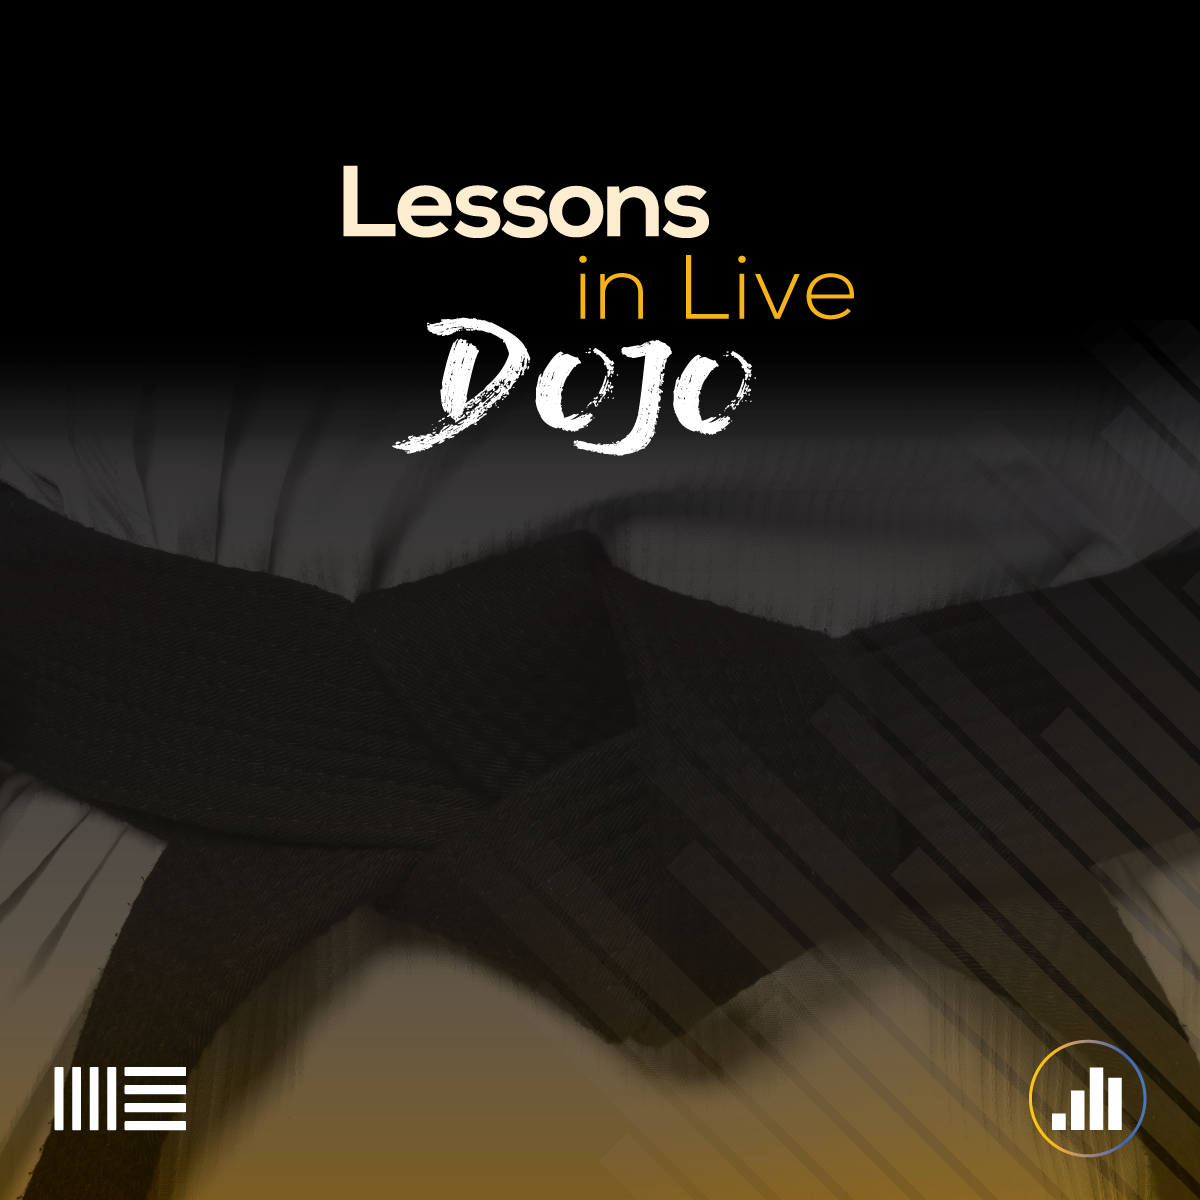 Lessons in Live dOJO